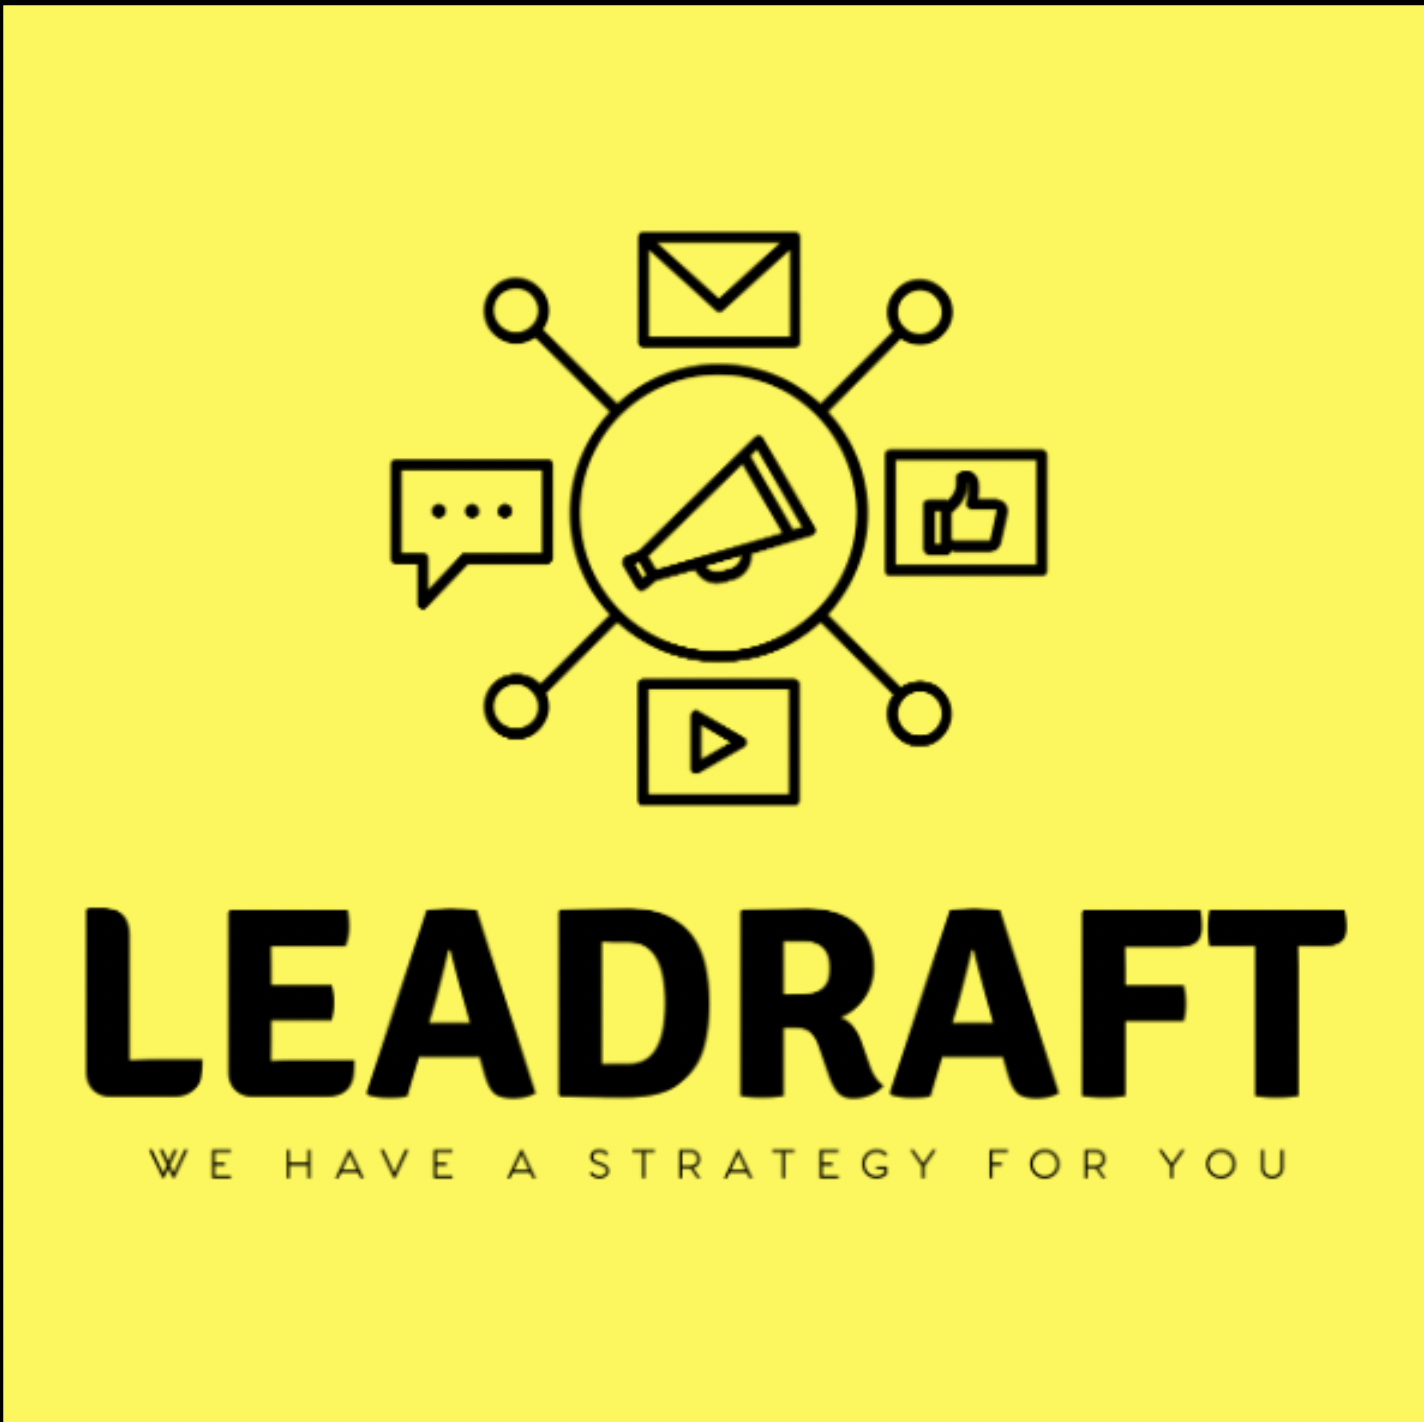 Leadraft Digital Marketing